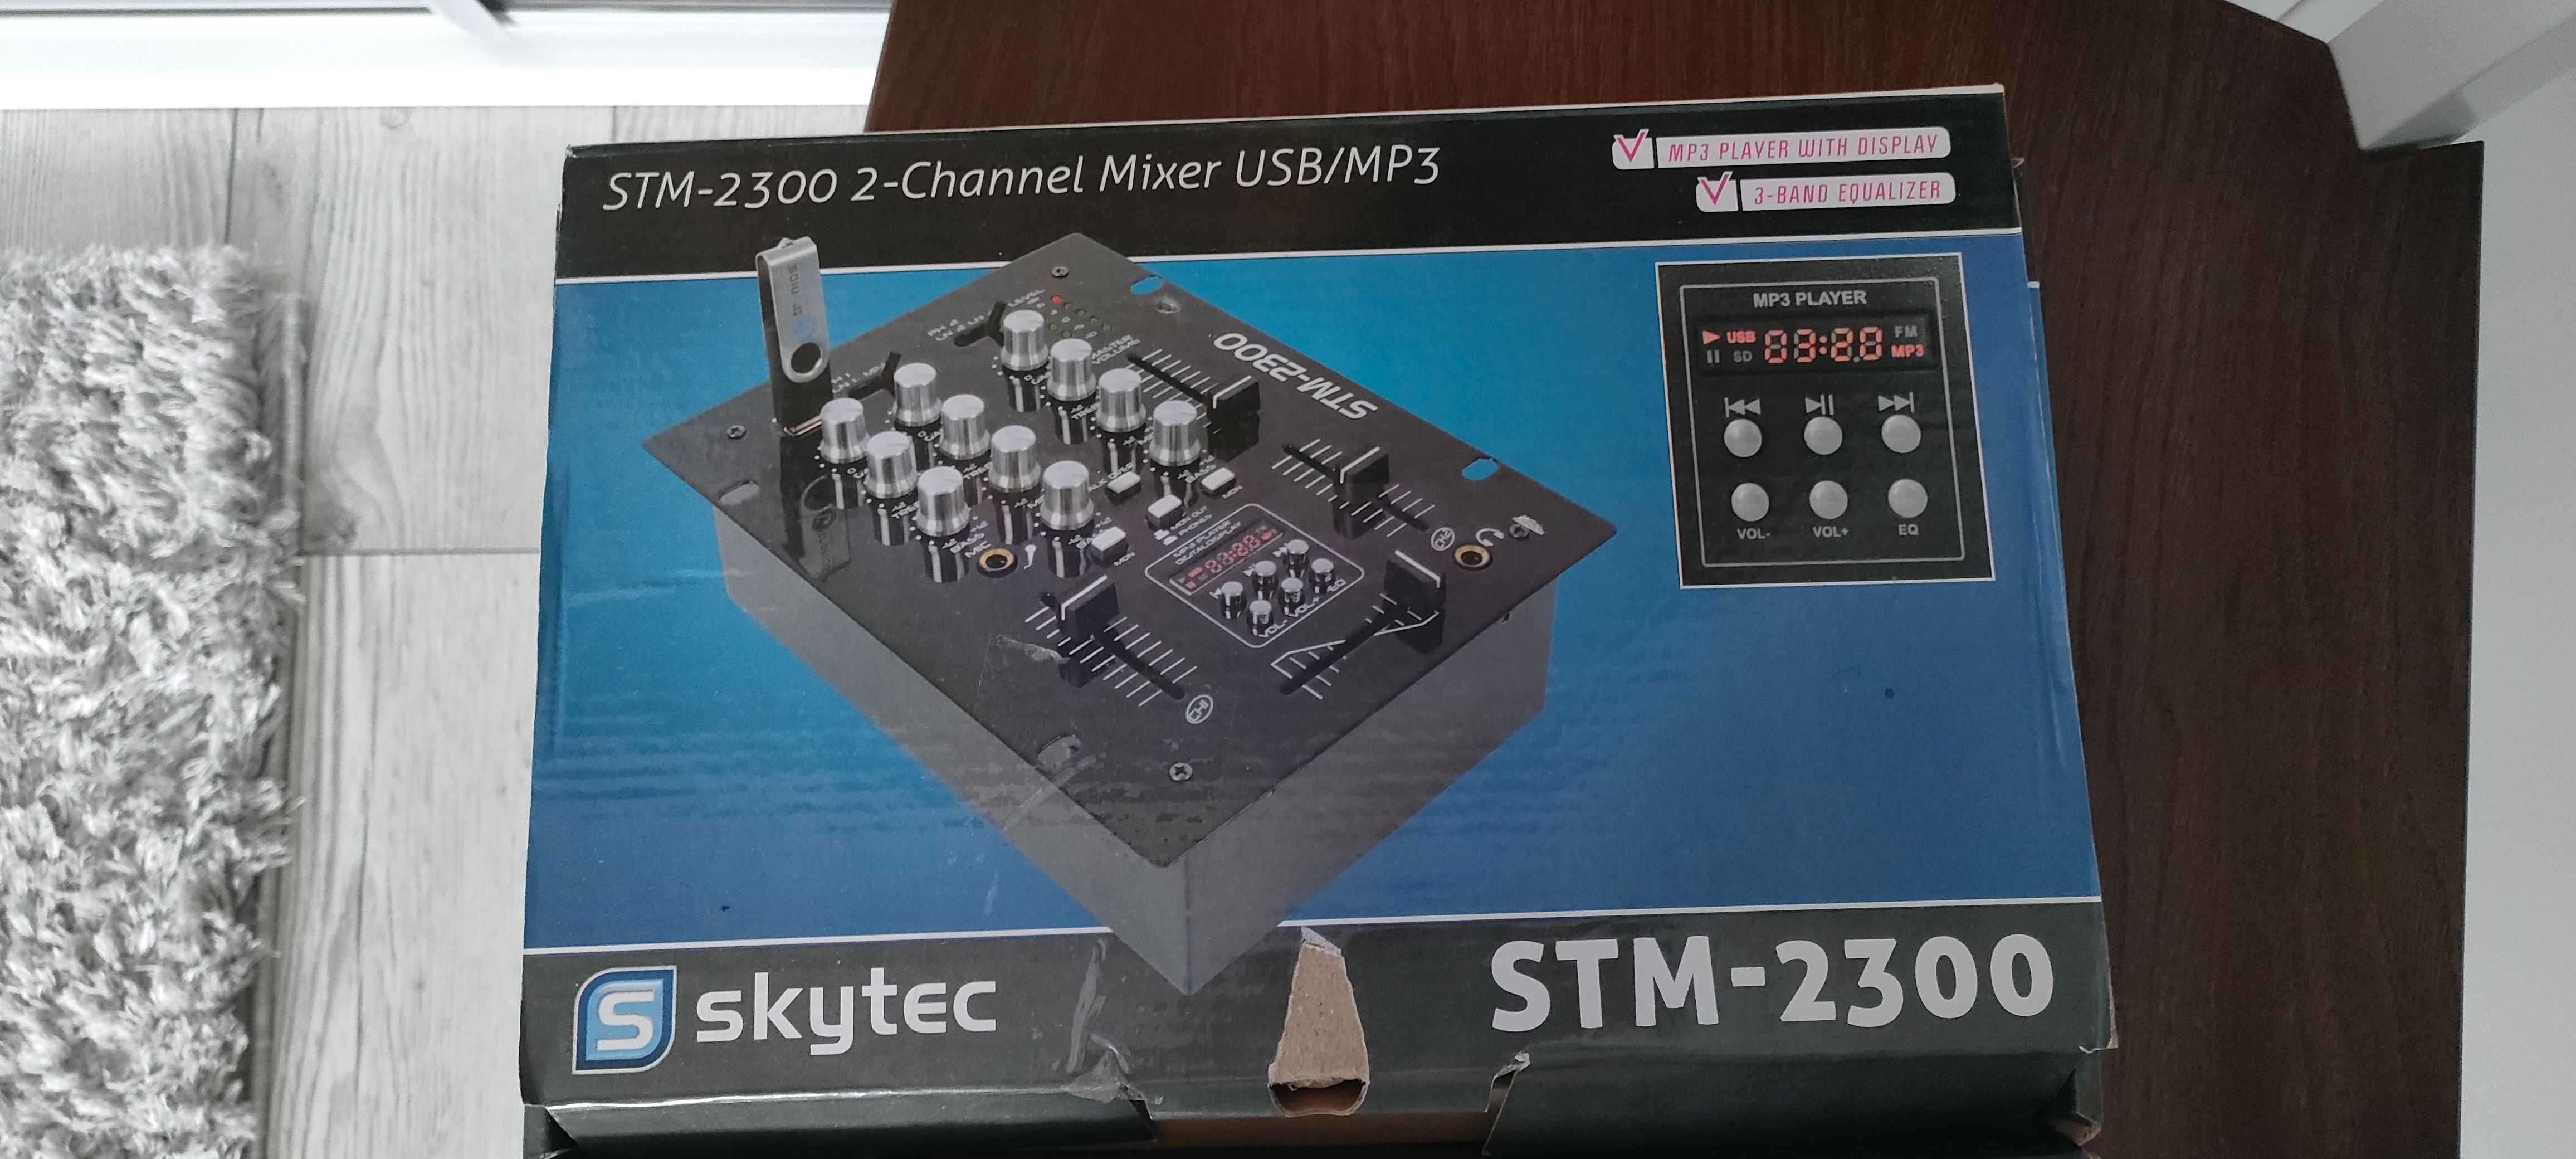 Mikser Skytec STM-2300